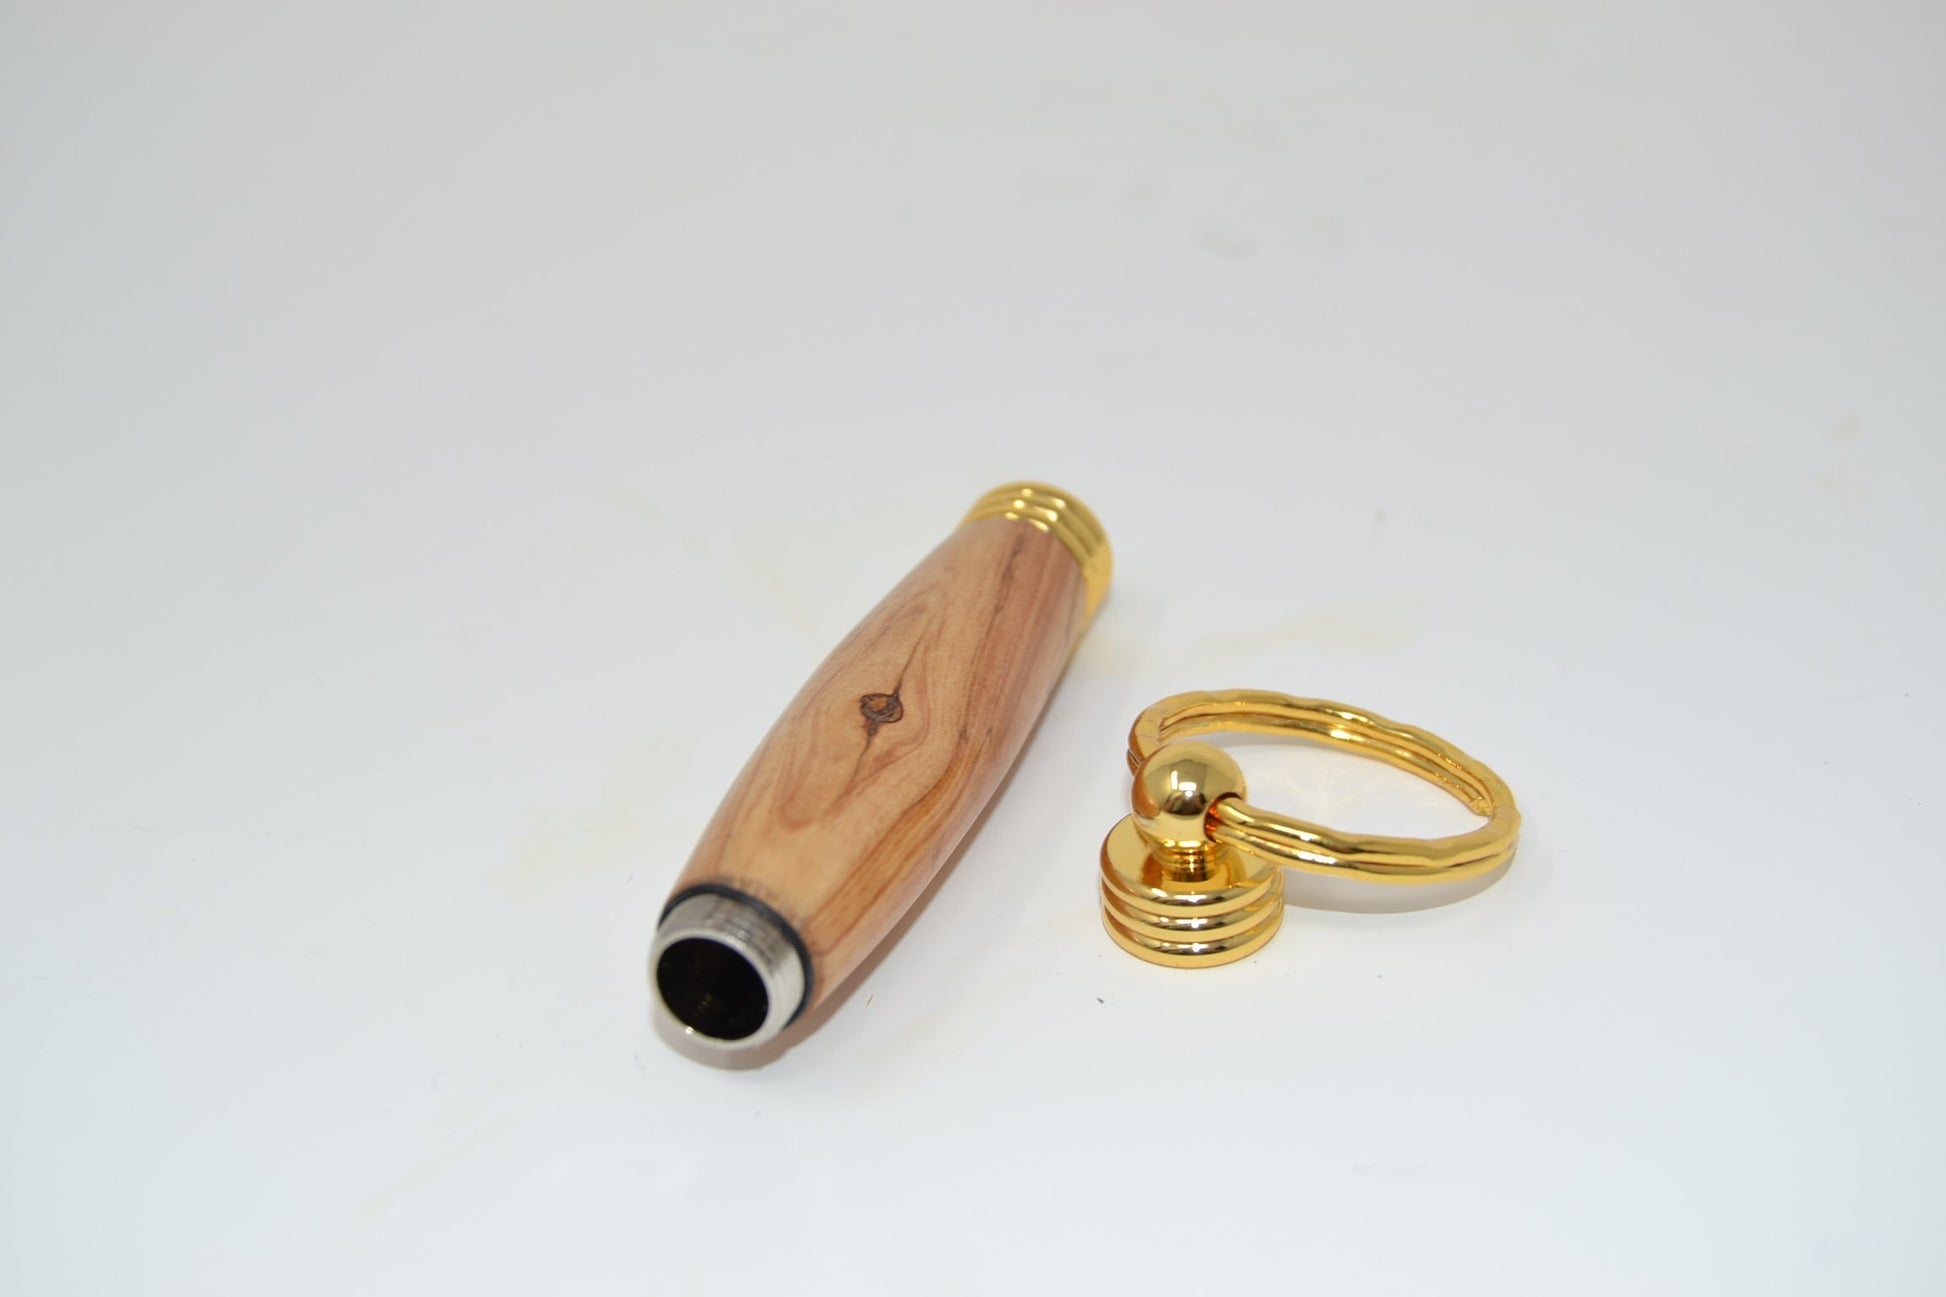 Holz Schlüsselanhänger aus Apfelholz mit Geheimfach, vergoldet